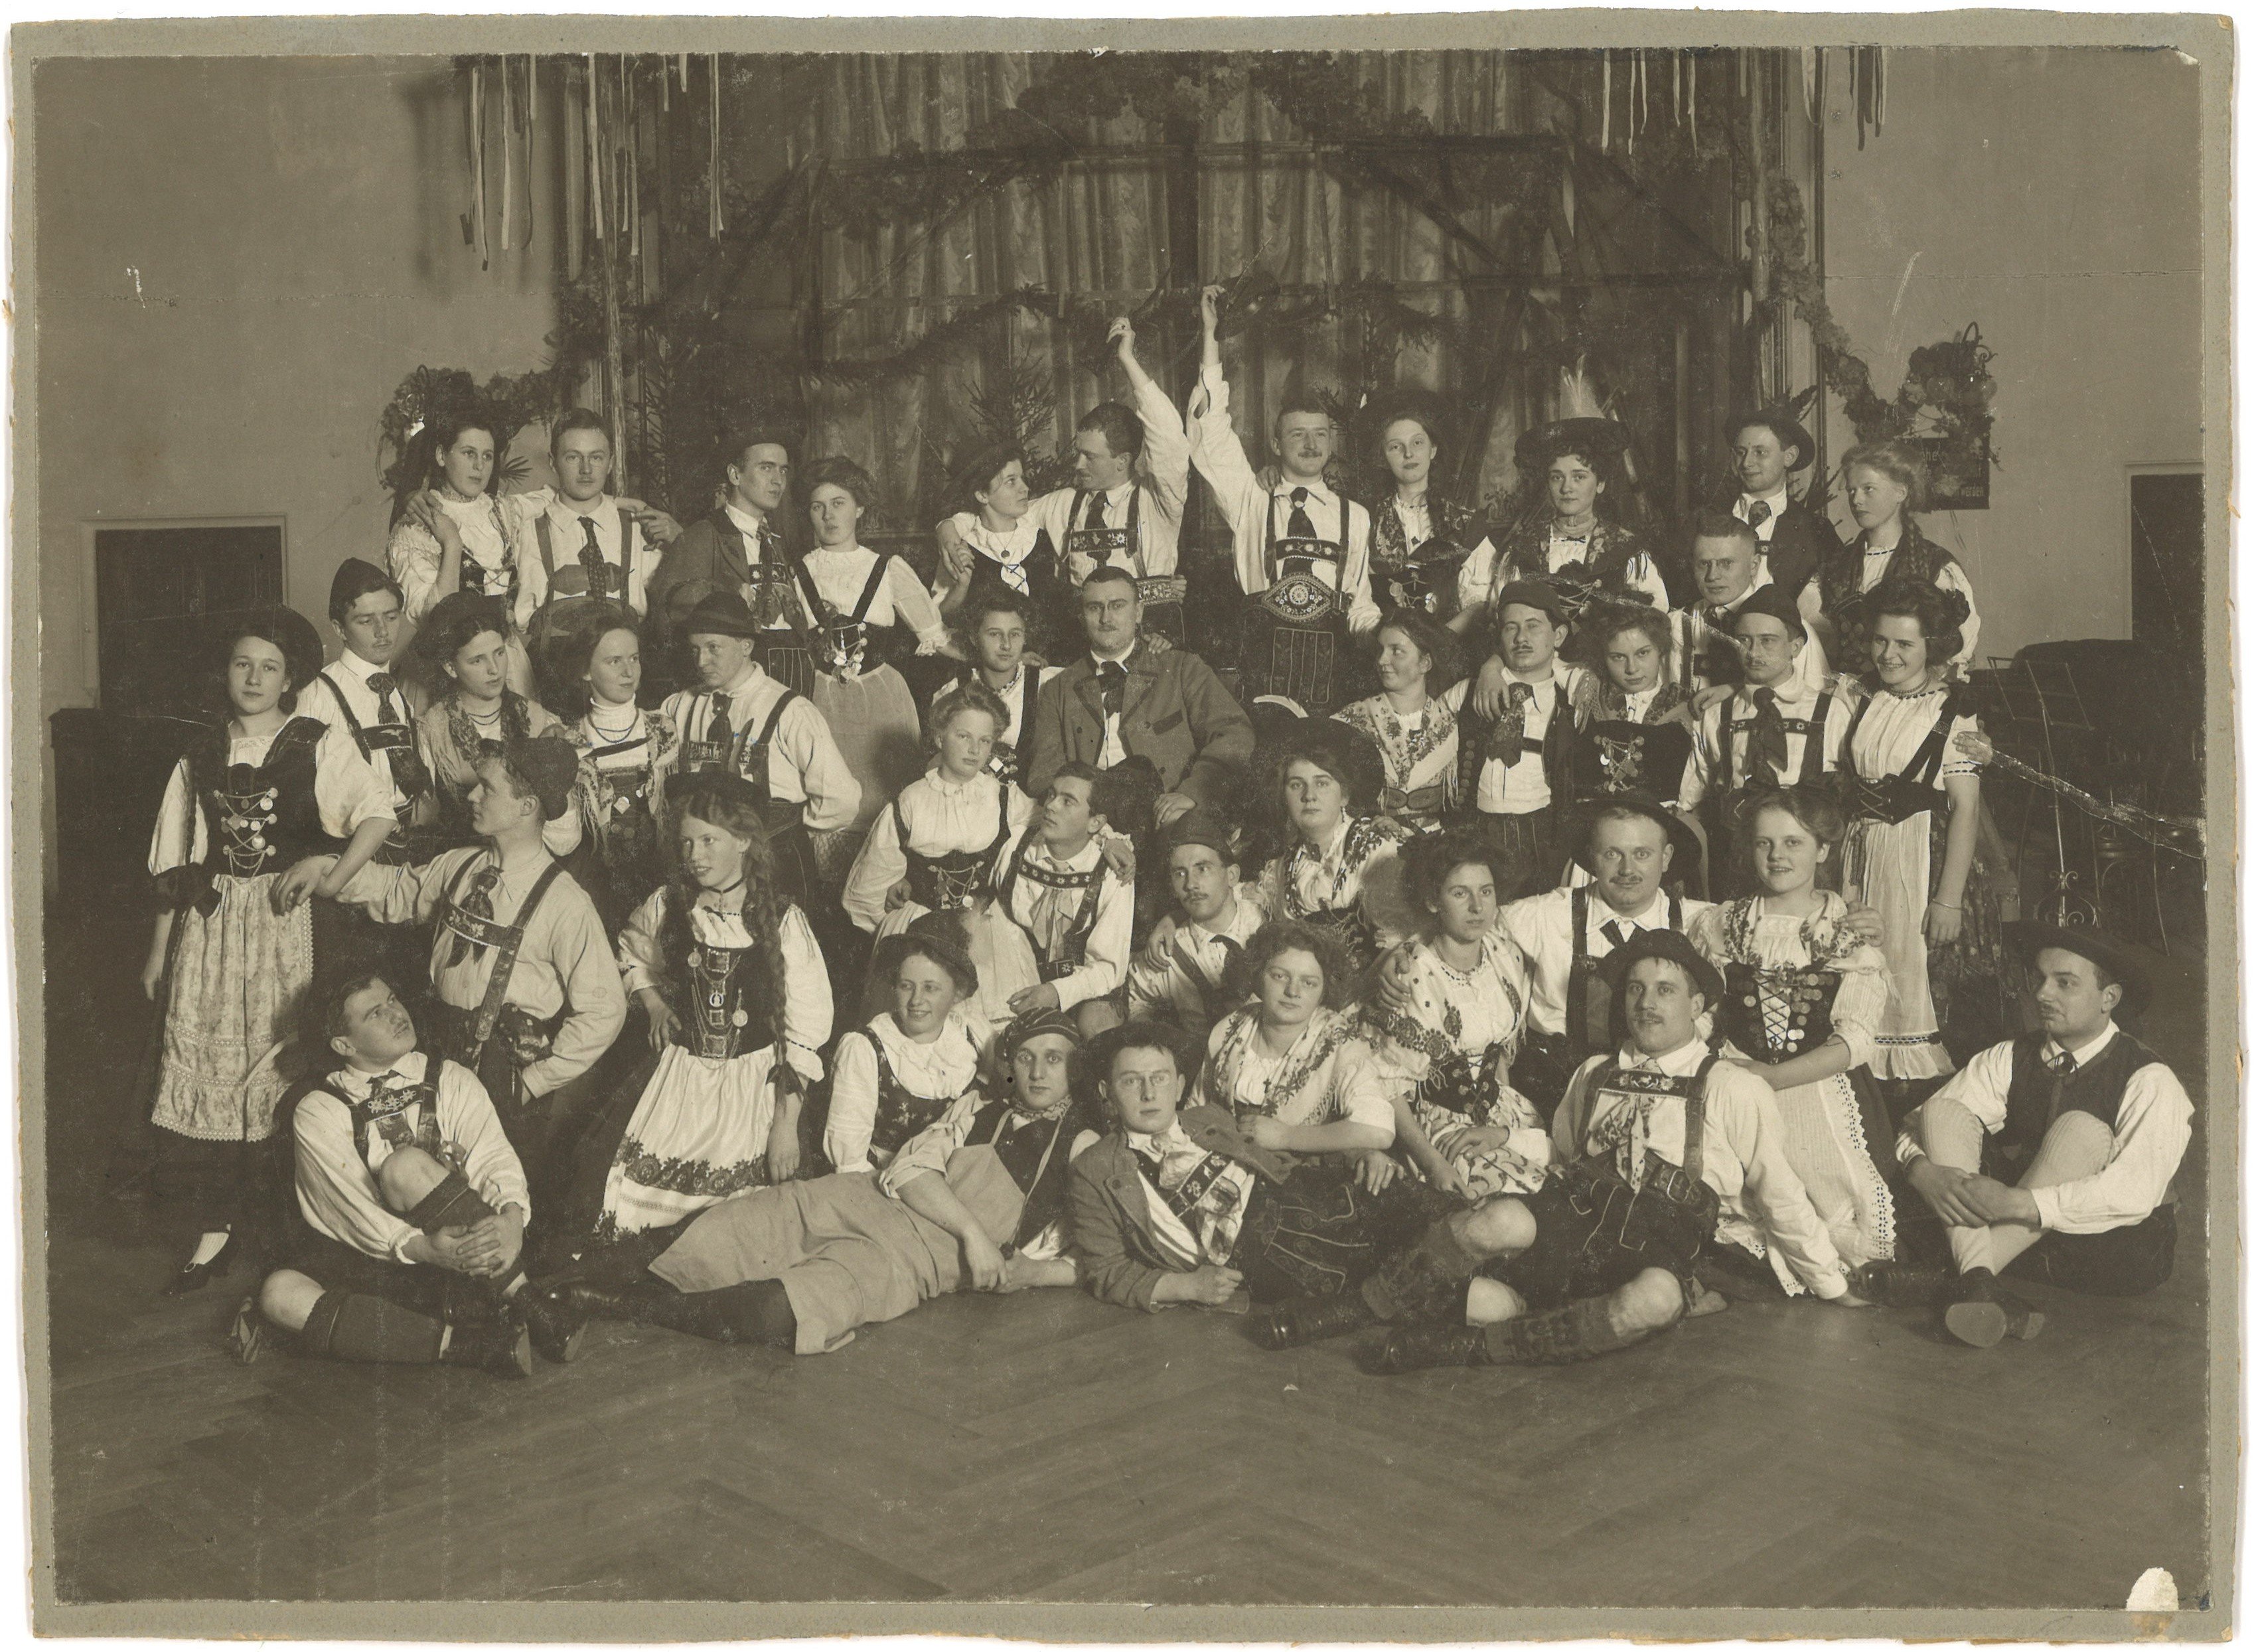 Berlin-Südende: Kostümfest um 1910 (Landesgeschichtliche Vereinigung für die Mark Brandenburg e.V., Archiv CC BY)